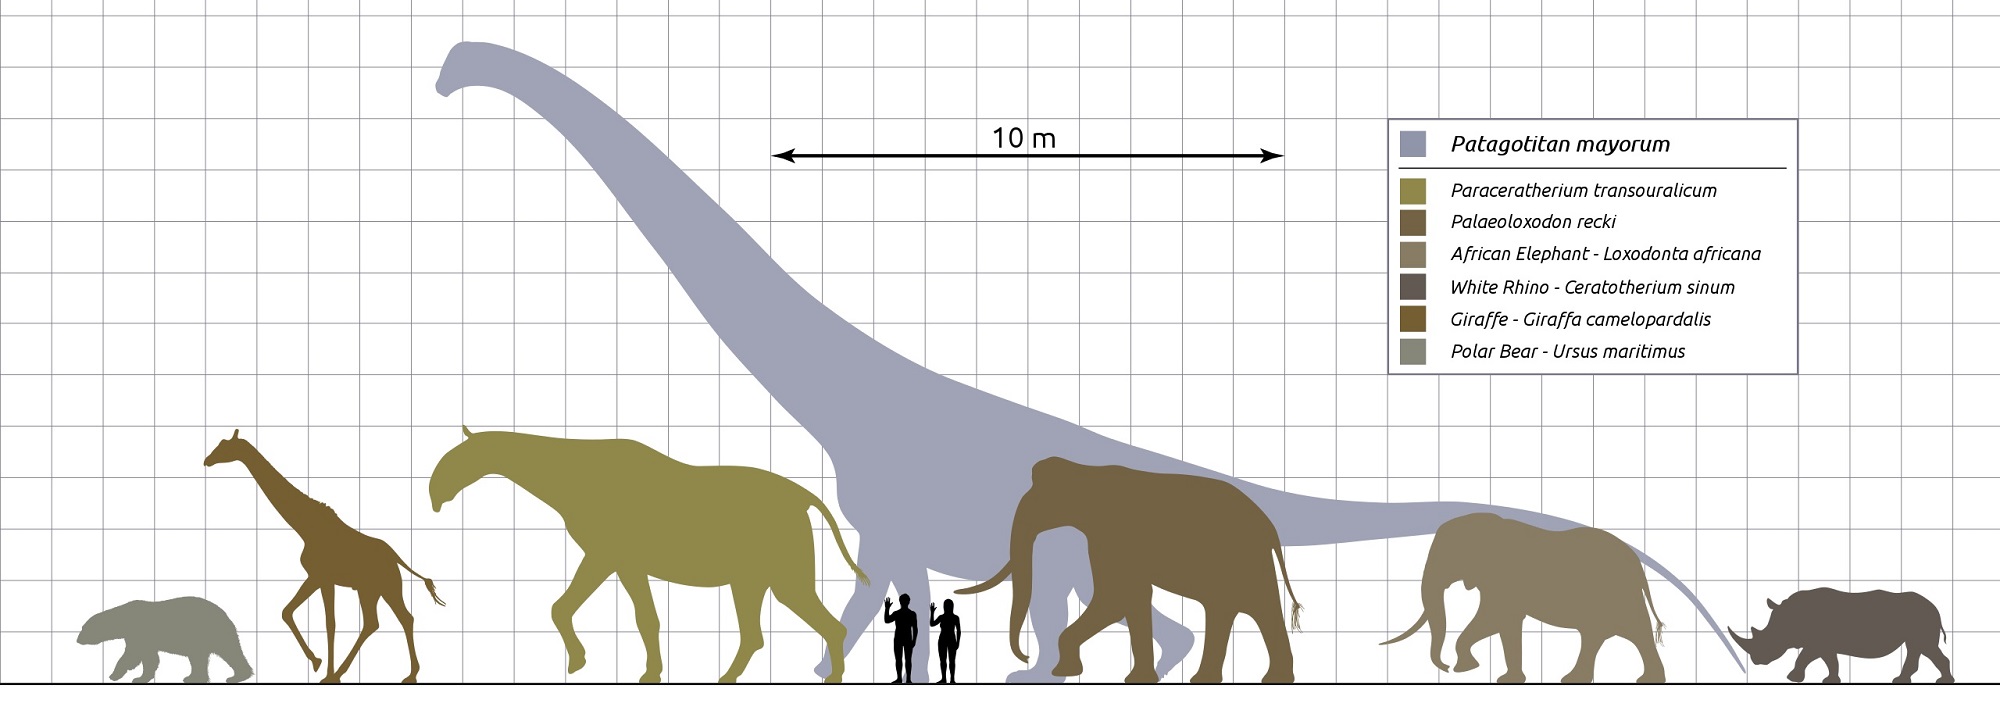 Sauropodi svými rozměry výrazně překonávají všechny ostatní obří zástupce suchozemských živočichů, ať už to jsou jiní druhohorní dinosauři nebo gigantičtí kenozoičtí savci. Titanosaur druhu Patagotitan mayorum byl jen o trochu menší než argentinosaur